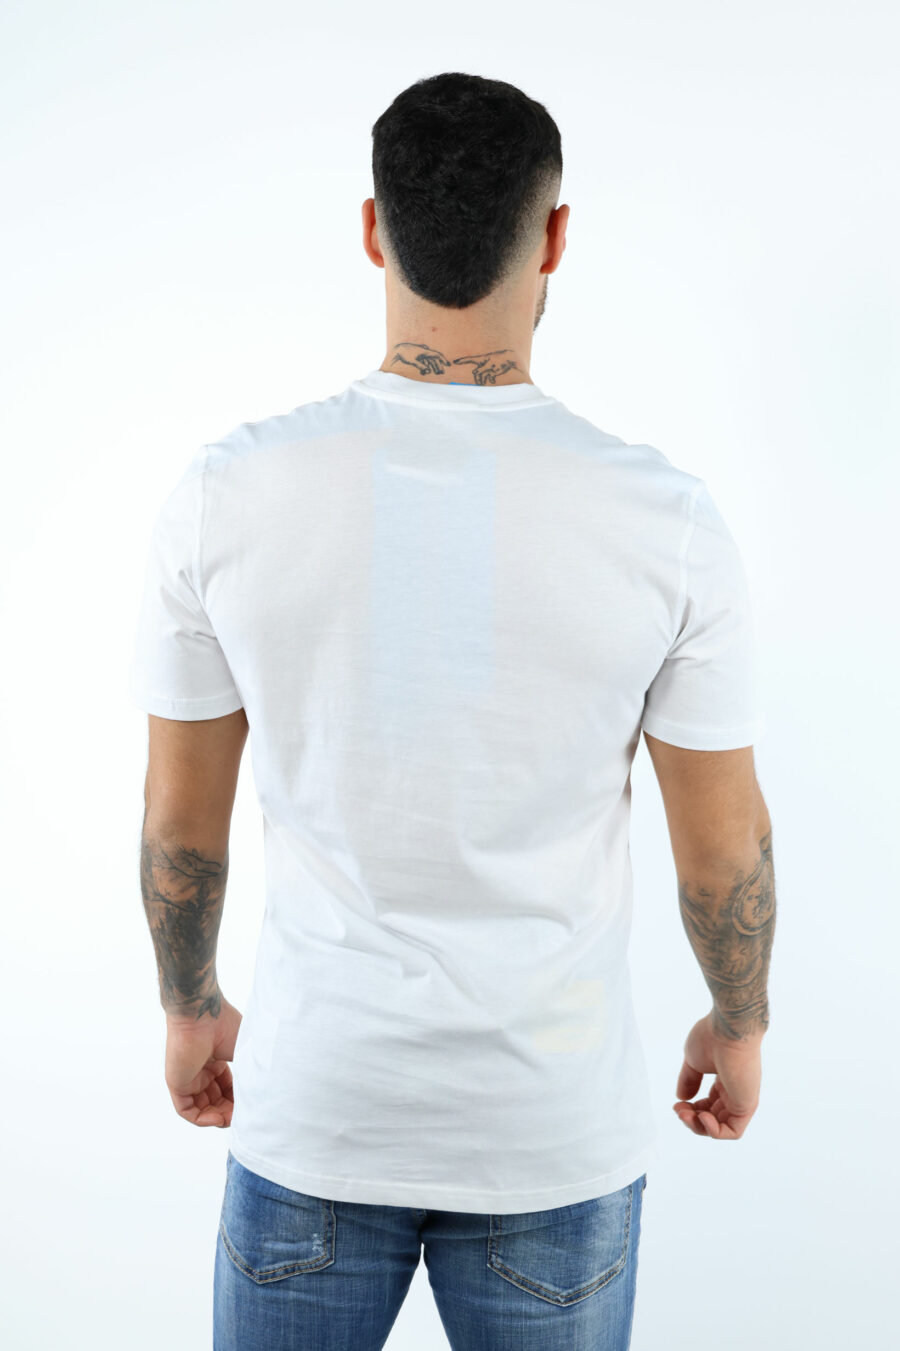 Camiseta blanca con minilogo "in love we trust" - 106643